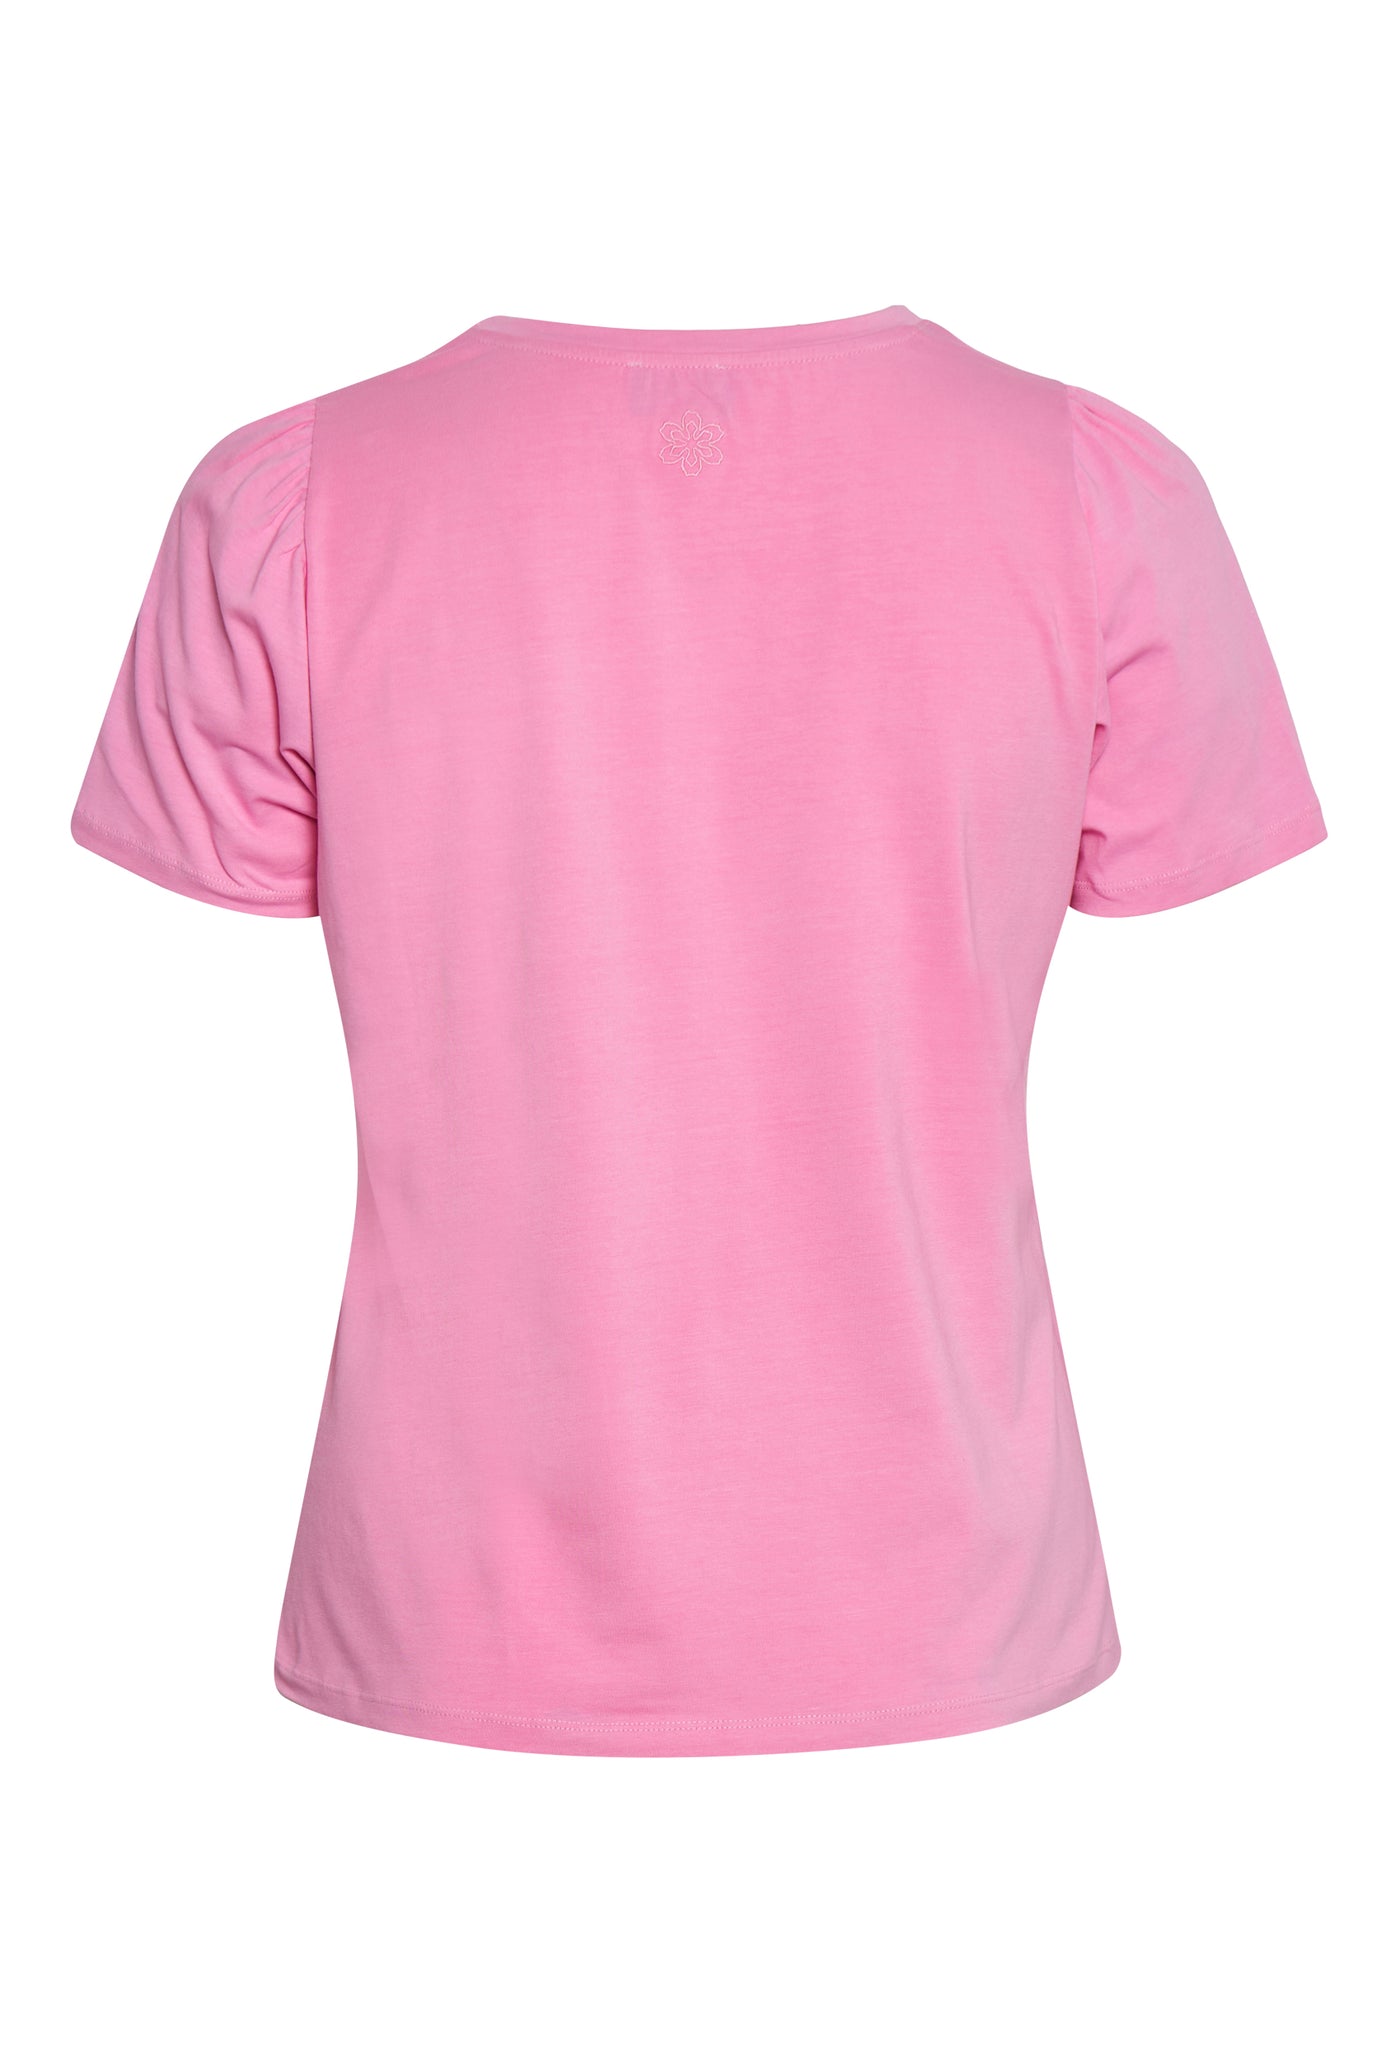 Aprico APFontana T-Shirt 056 Rose